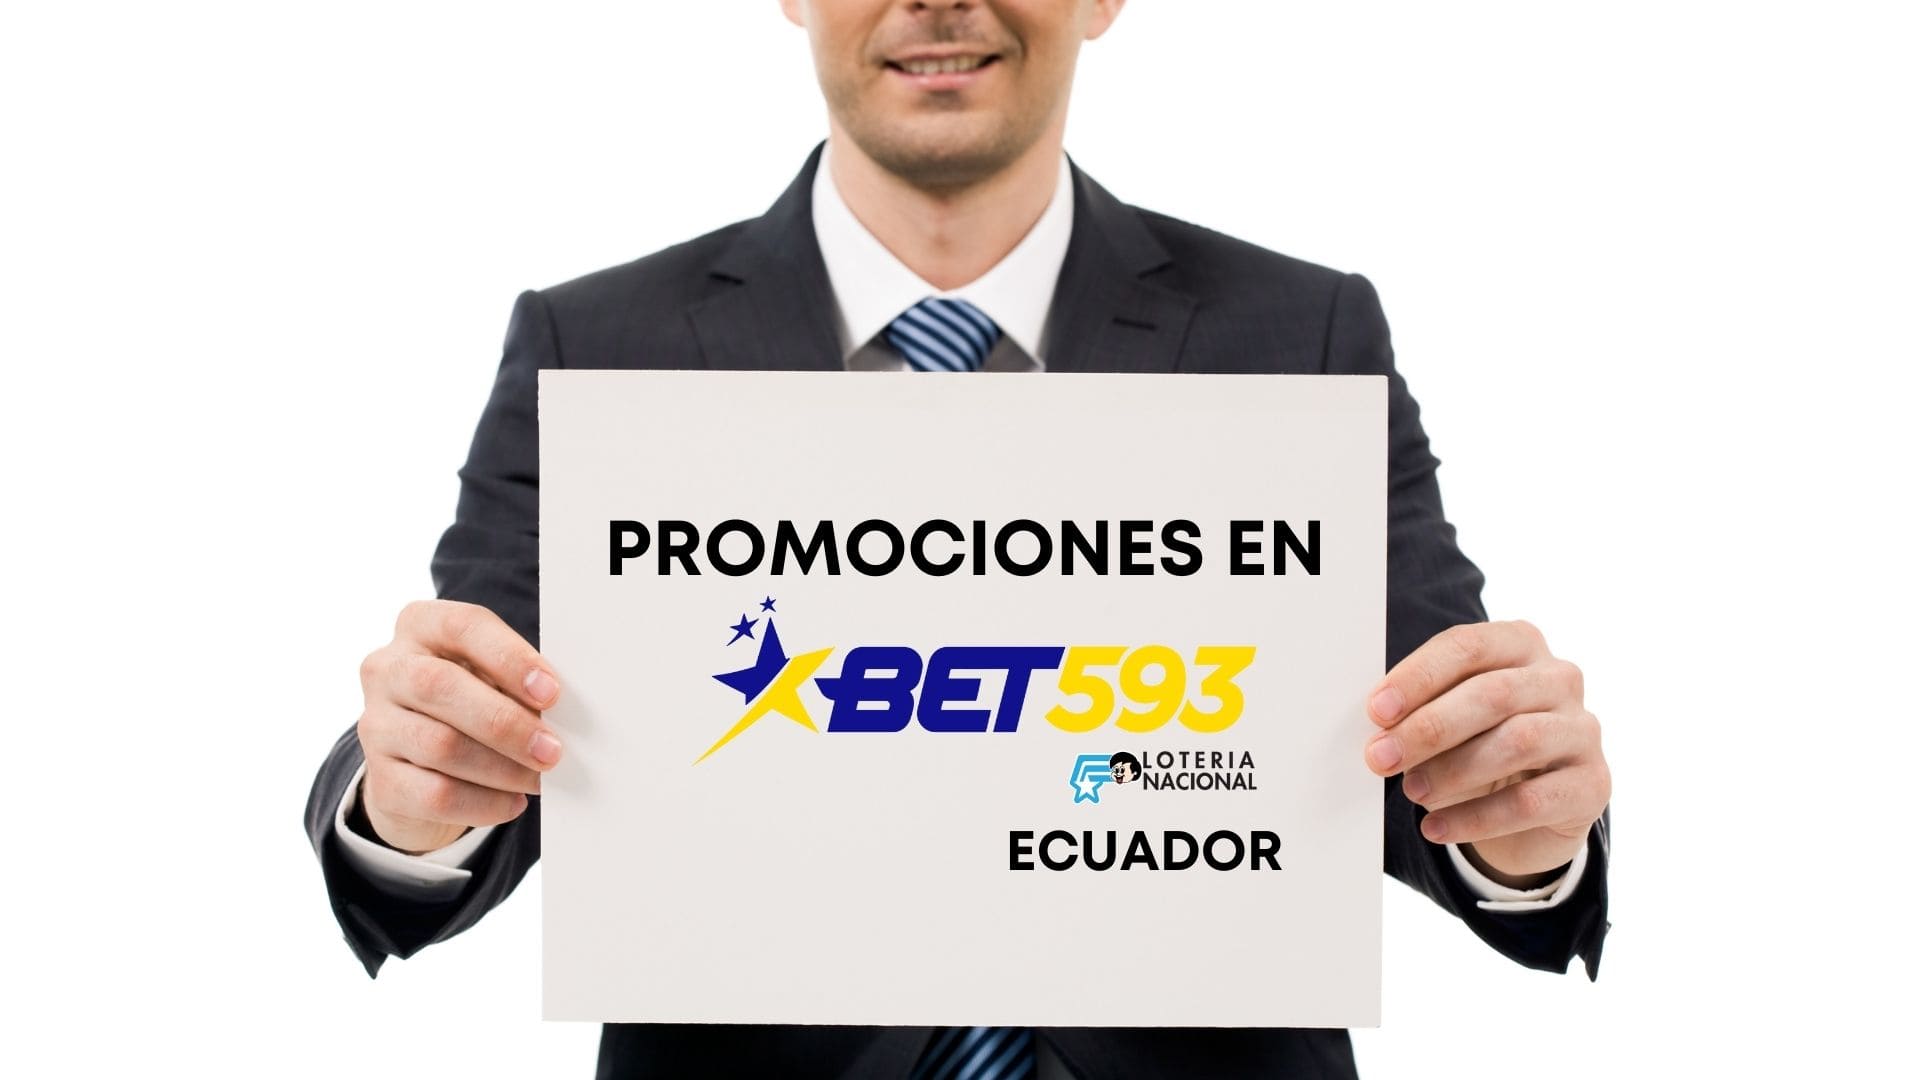 Promociones Bet593 Ecuador